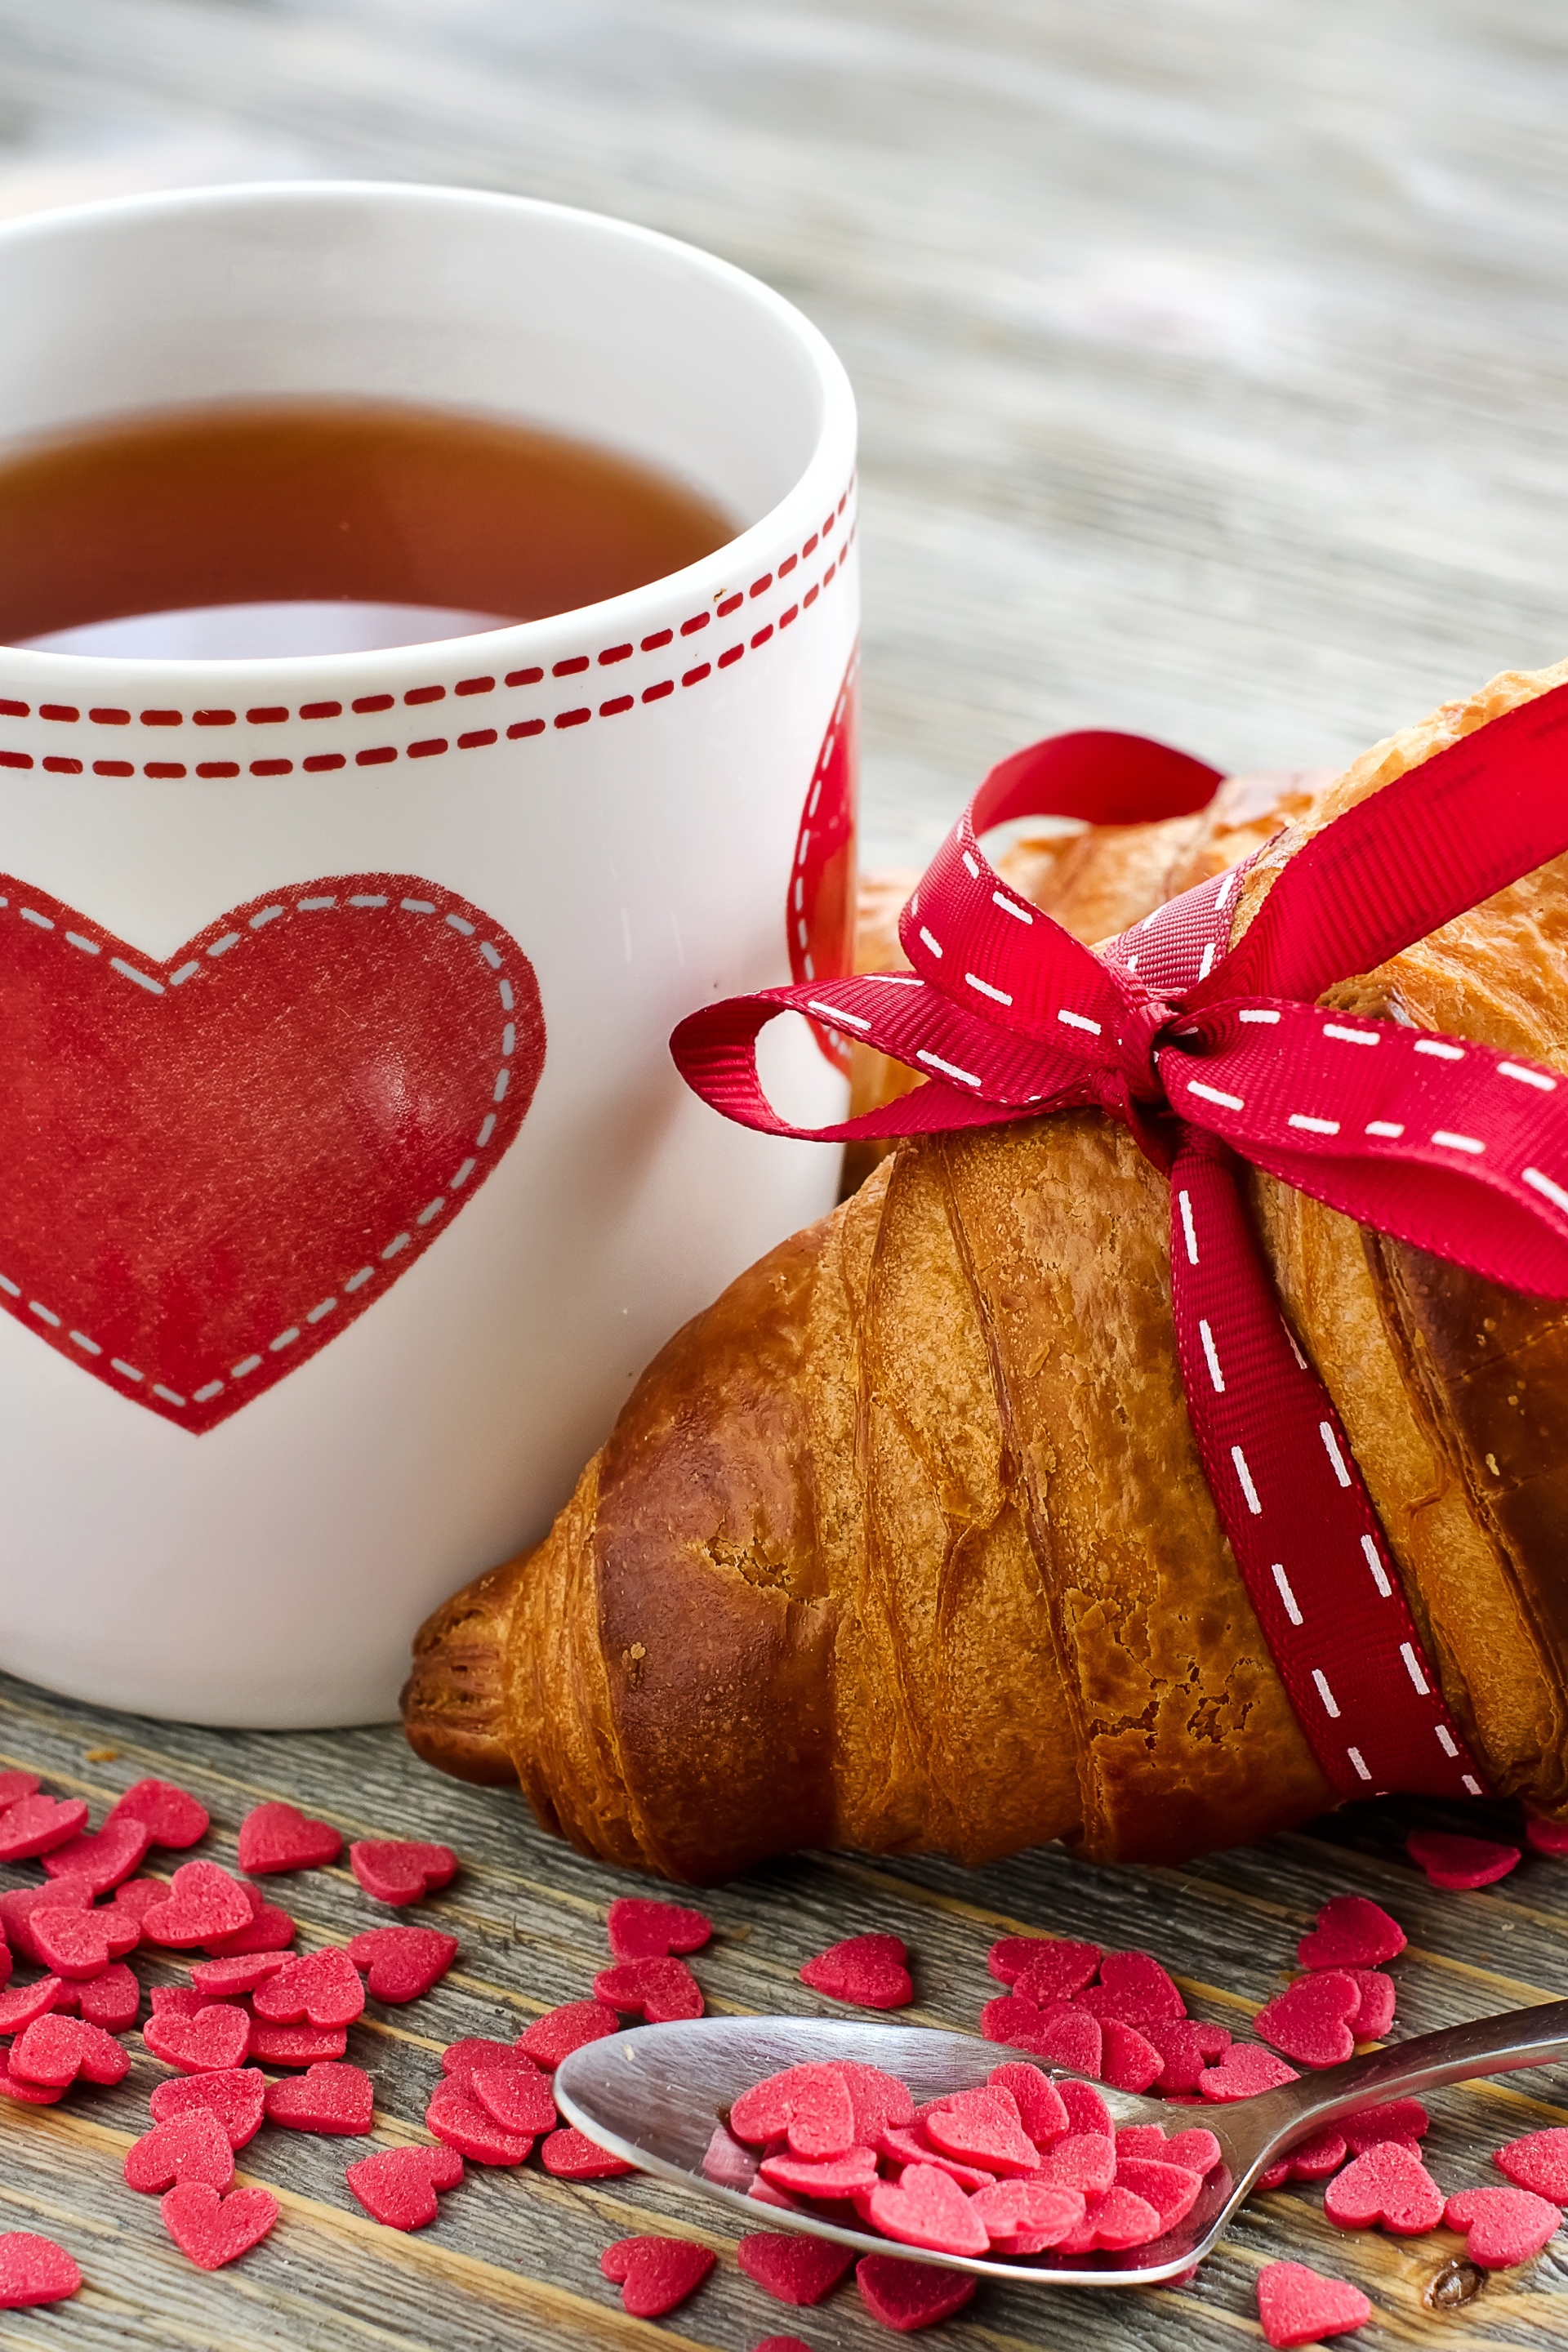 Картинка: Круассан, выпечка, кружка, чашка, чай, сердце, сердечки, любовь, завтрак